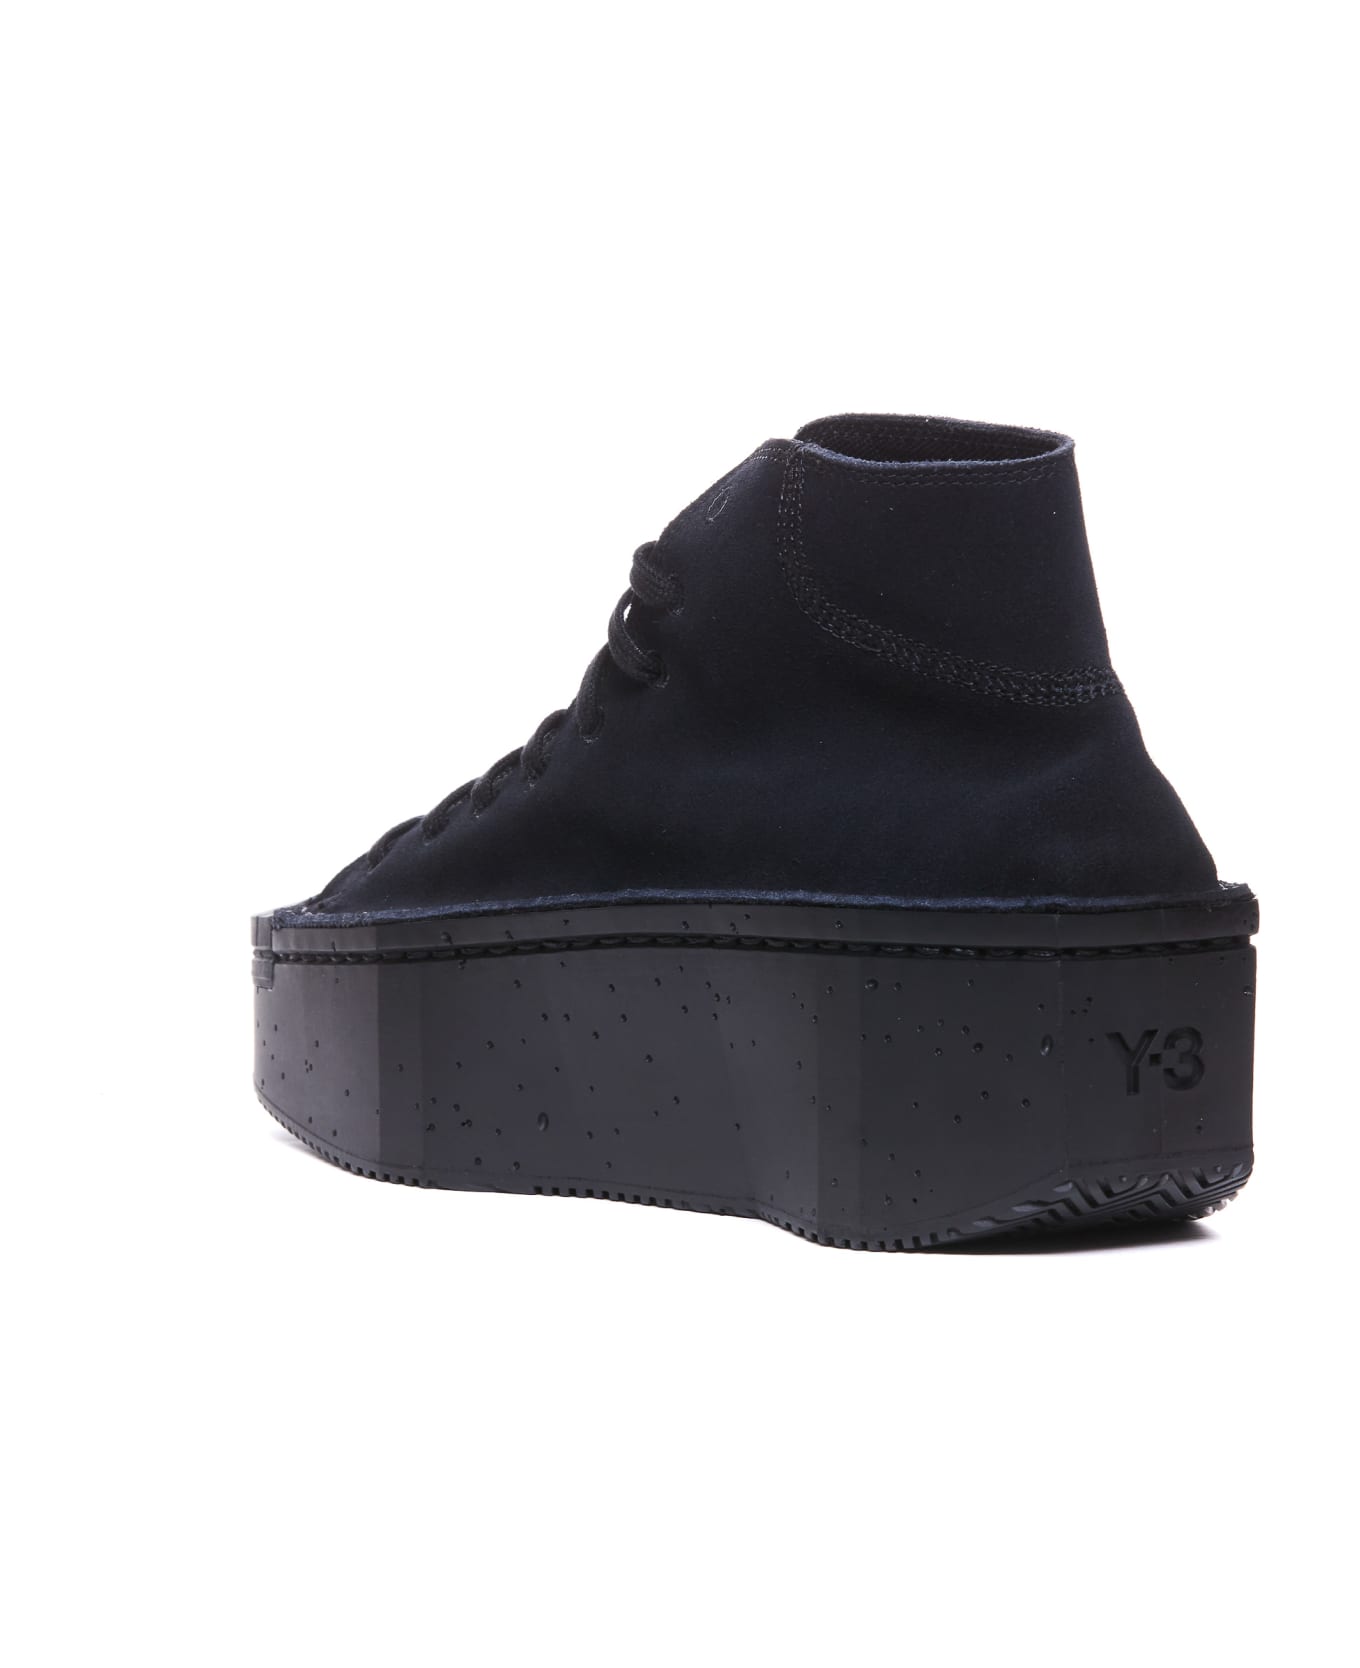 Y-3 Kyasu Hi Sneakers - Black